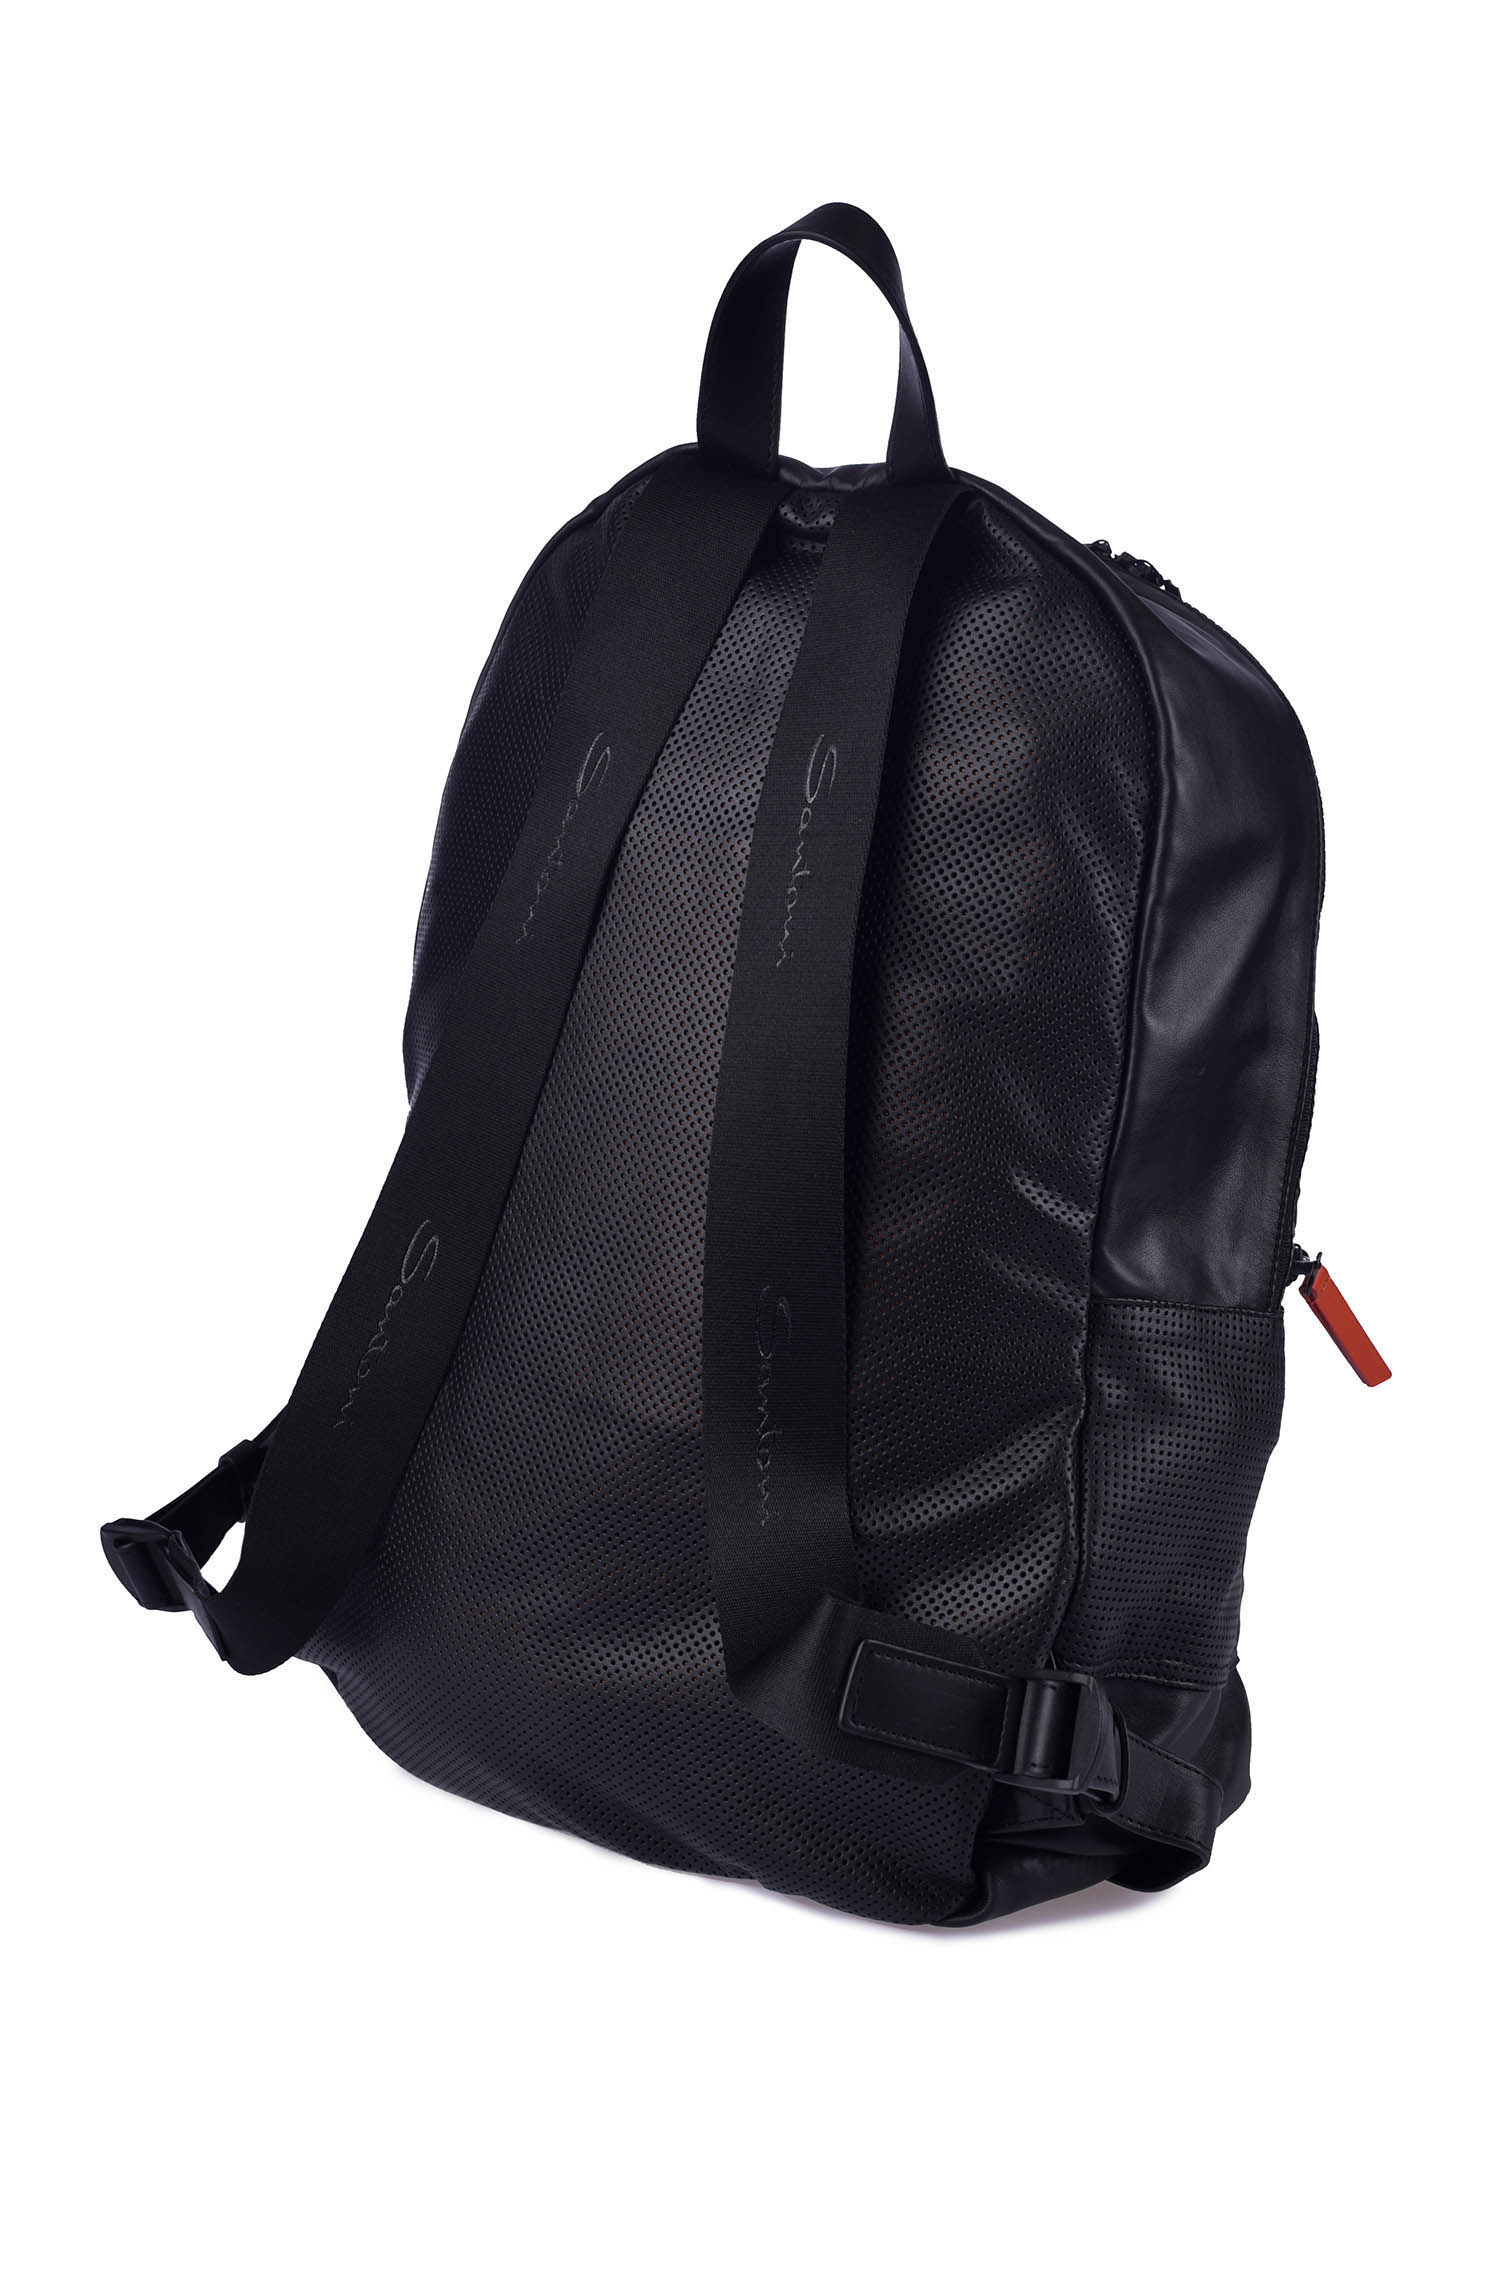 Рюкзак SANTONI UIBBA1873TR-G2BLN01, цвет: Черный, Мужской